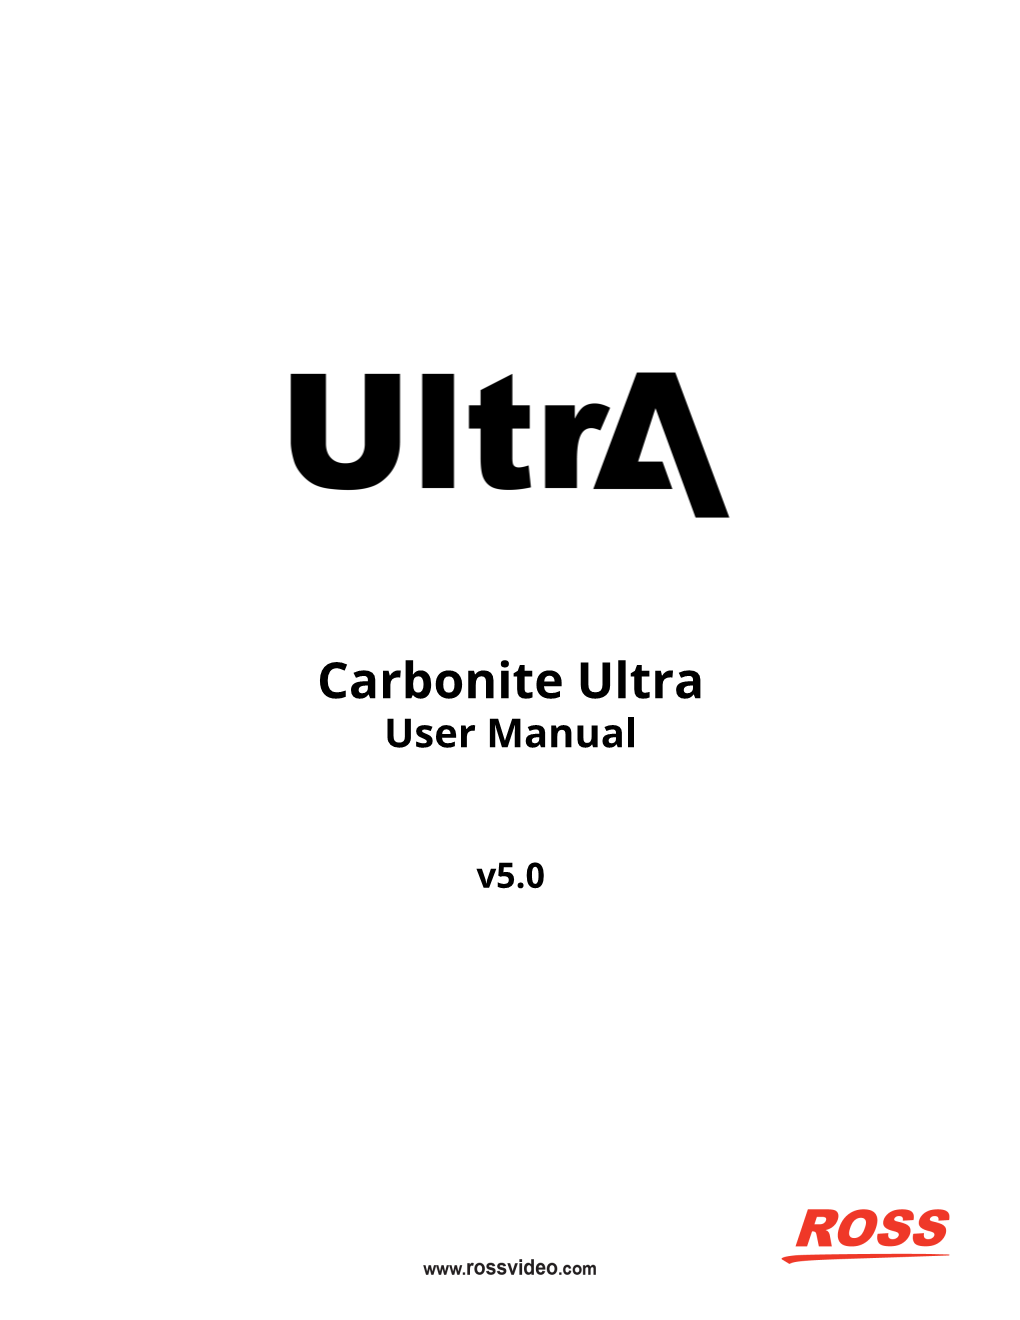 Ross Carbonite Ultra User Manual